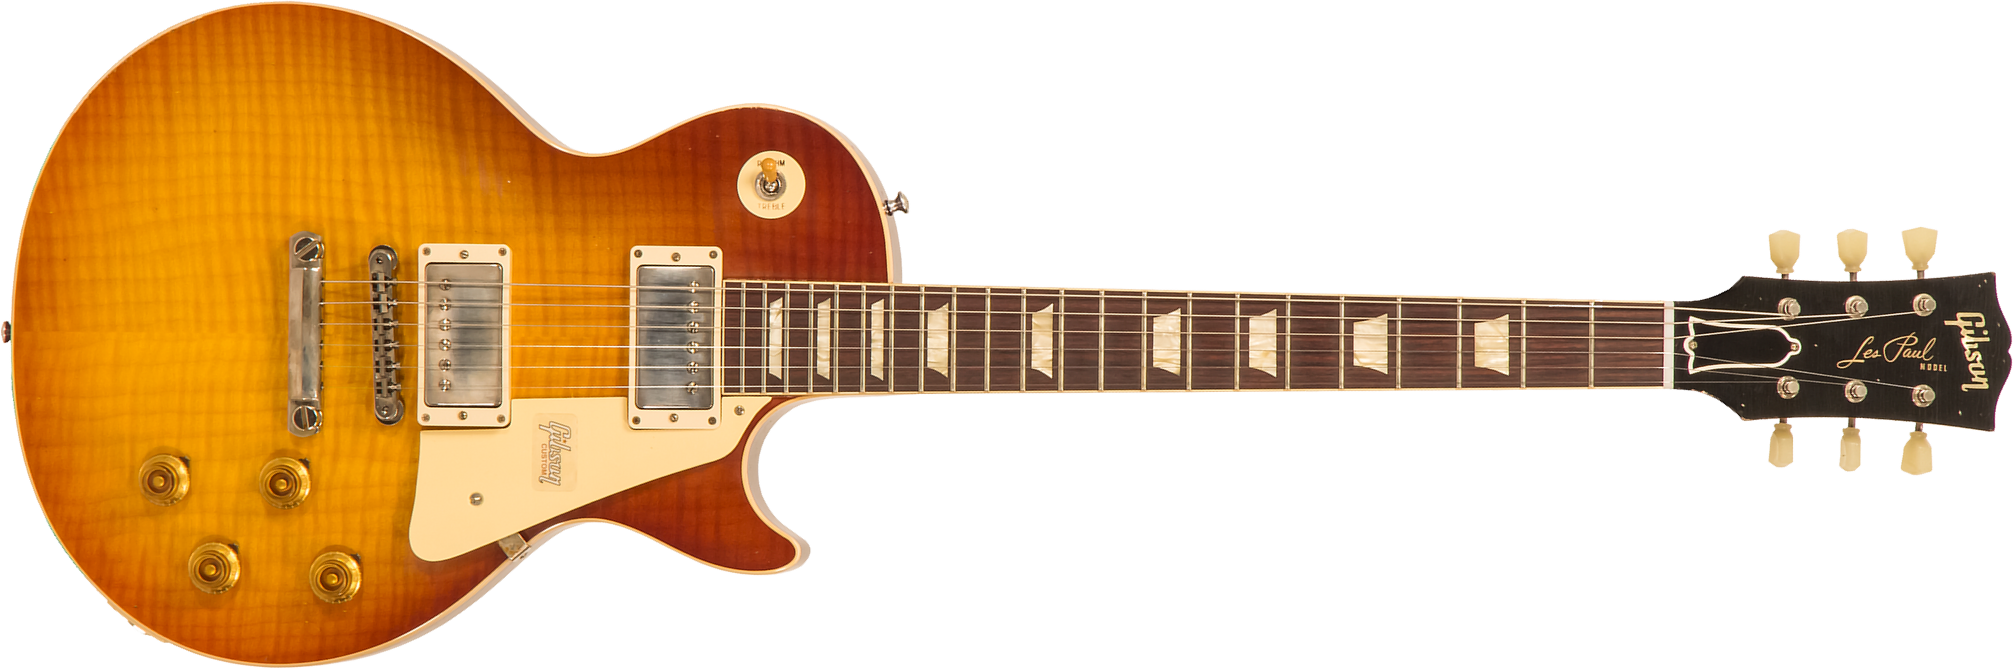 Gibson Custom Shop M2m Les Paul Standard 1959 60th Anniversary 2h Ht Rw #993516 - Vos Royal Teaburst - Guitare Électrique Single Cut - Main picture